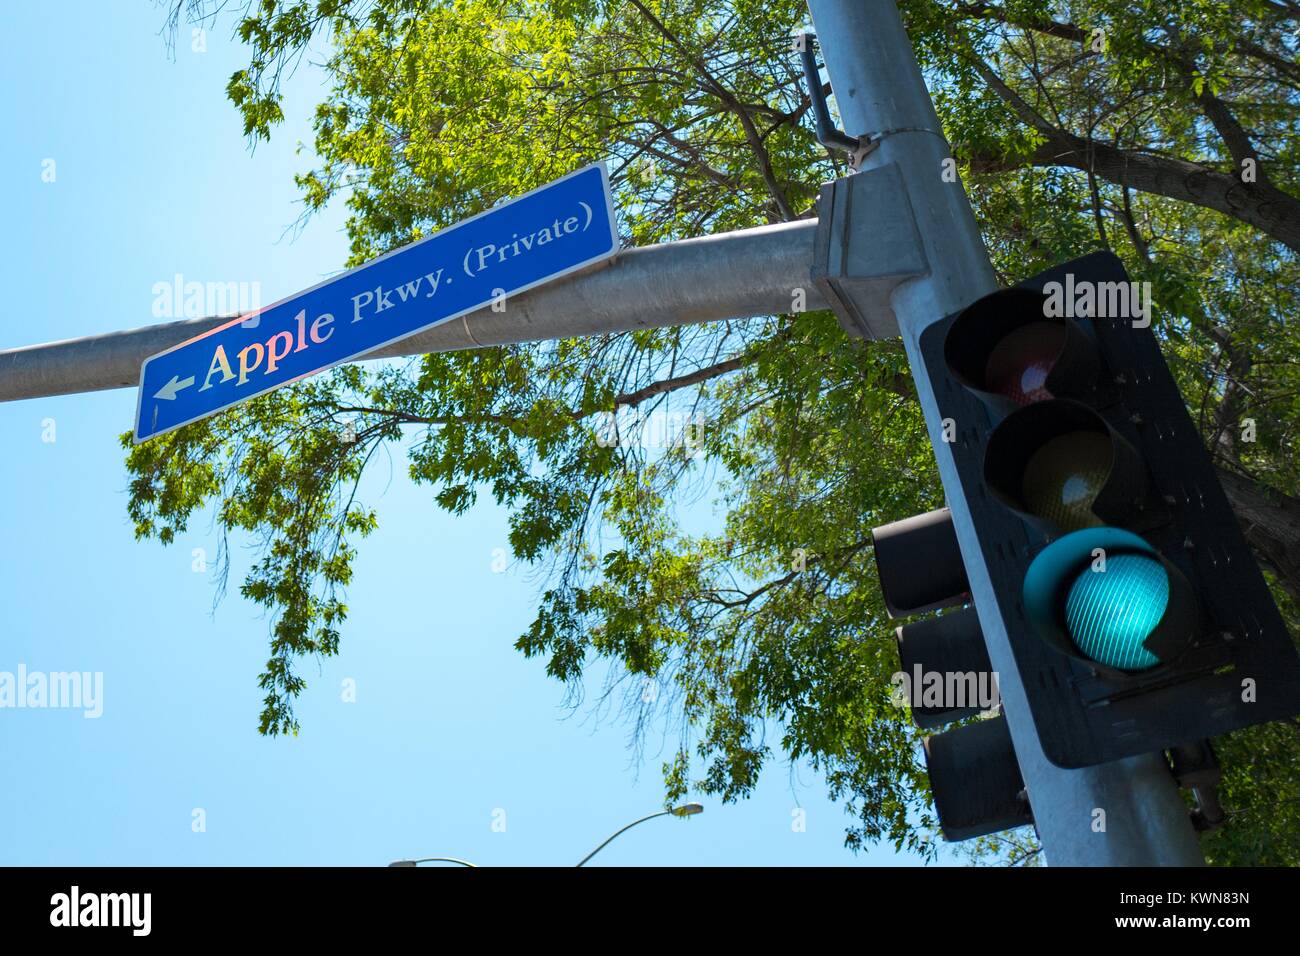 La signalisation pour Apple Parkway, avec feu vert, l'une des principales routes entrant dans le parc d'Apple, connu familièrement comme "le vaisseau spatial", le nouveau quartier général d'Apple Inc dans la Silicon Valley ville de Cupertino, Californie, 25 juillet 2017. Banque D'Images